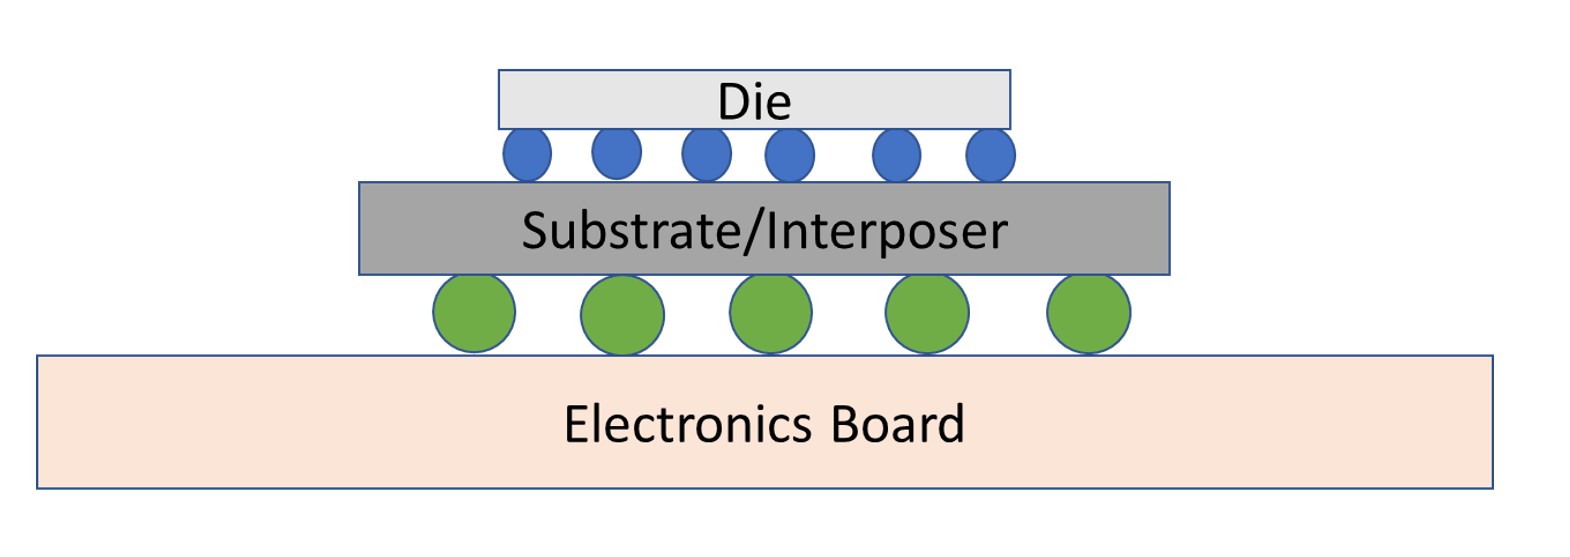 Fig. 4: Diagrama conceptual del empaque flip-chip. Fuente: A. Meixner/Ingeniería de semiconductores